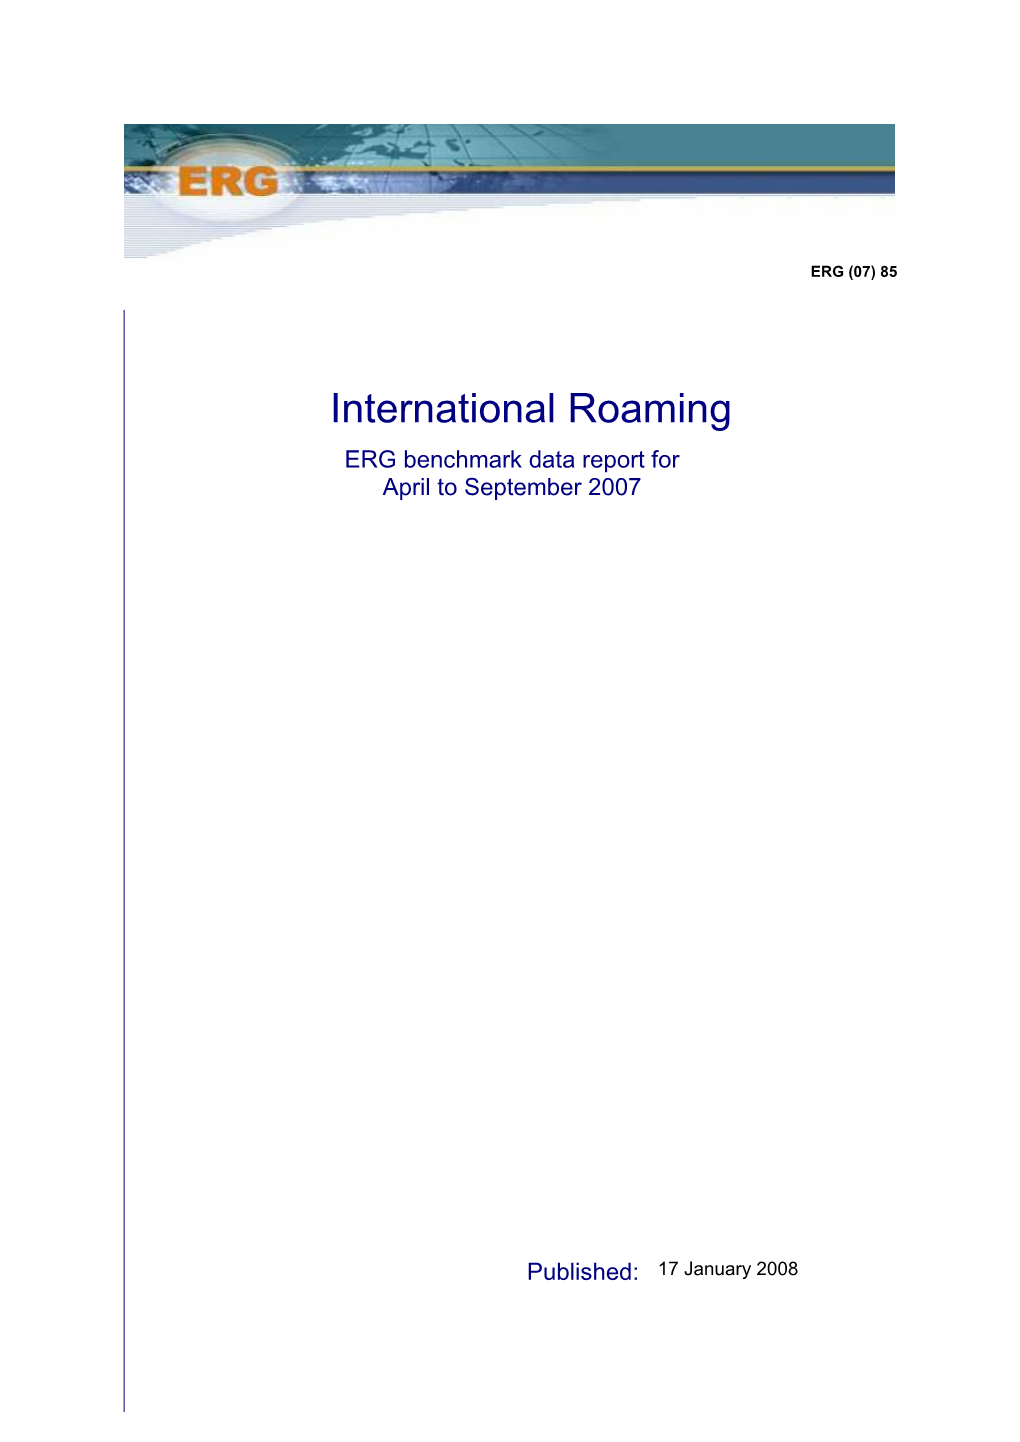 International Roaming ERG Benchmark Data Report for April to September 2007